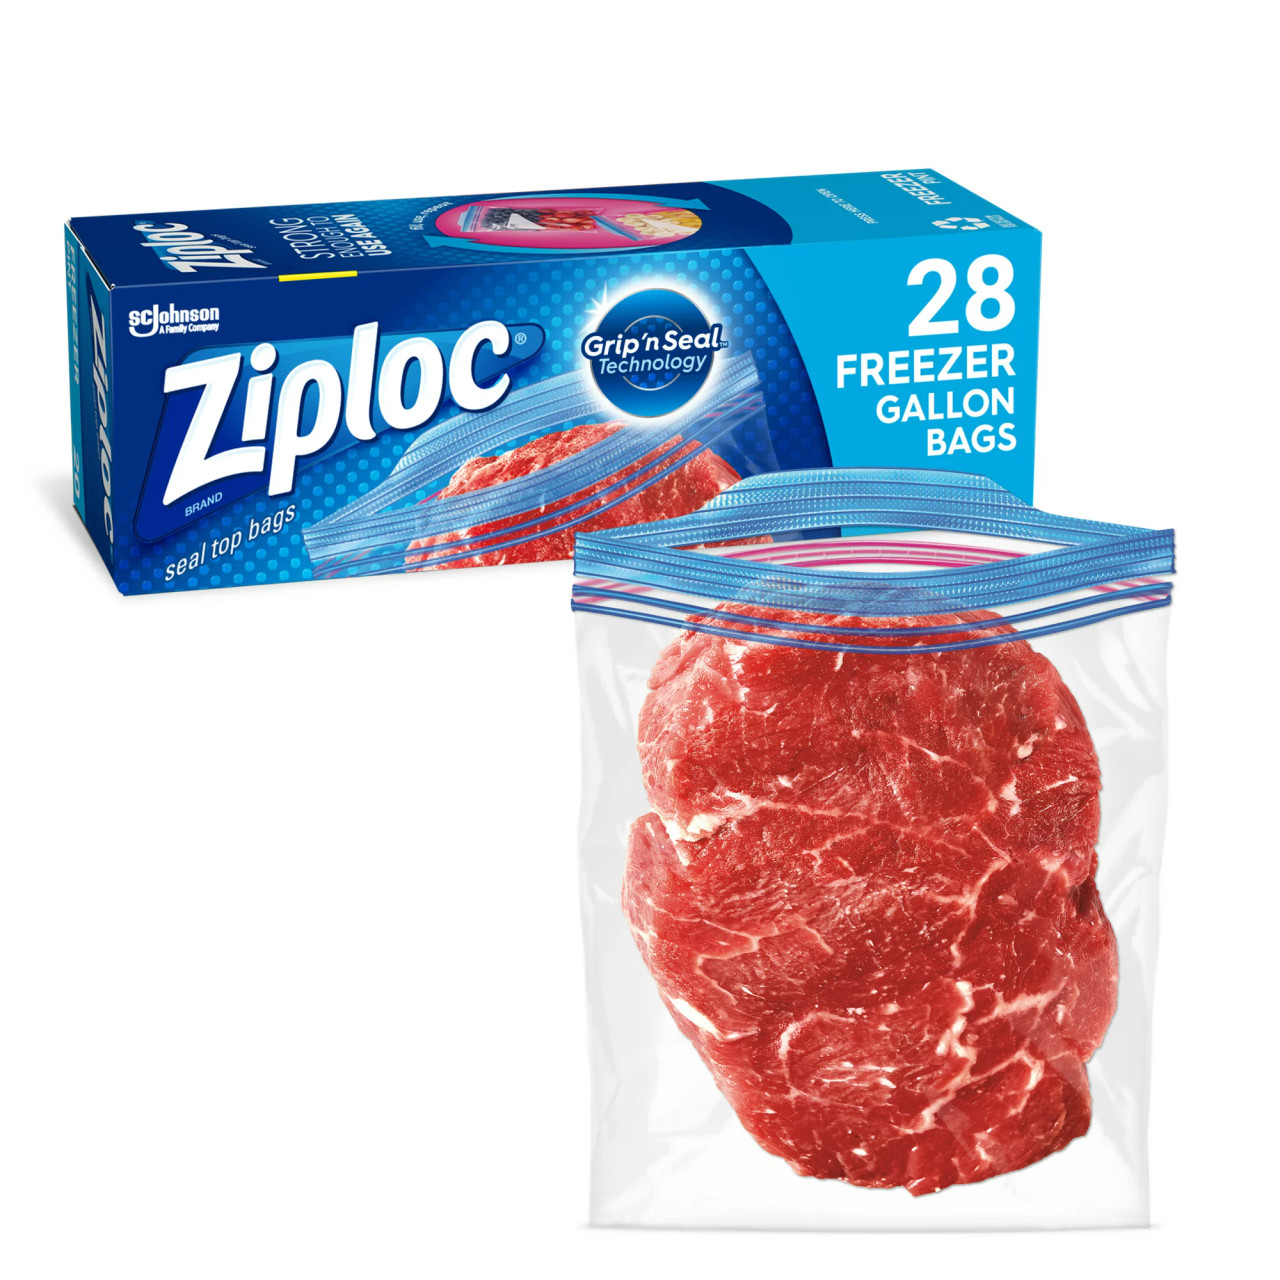 Ziploc Freezer Gallon Bags, Grip 'n Seal - 28 Ct, 9 Pack